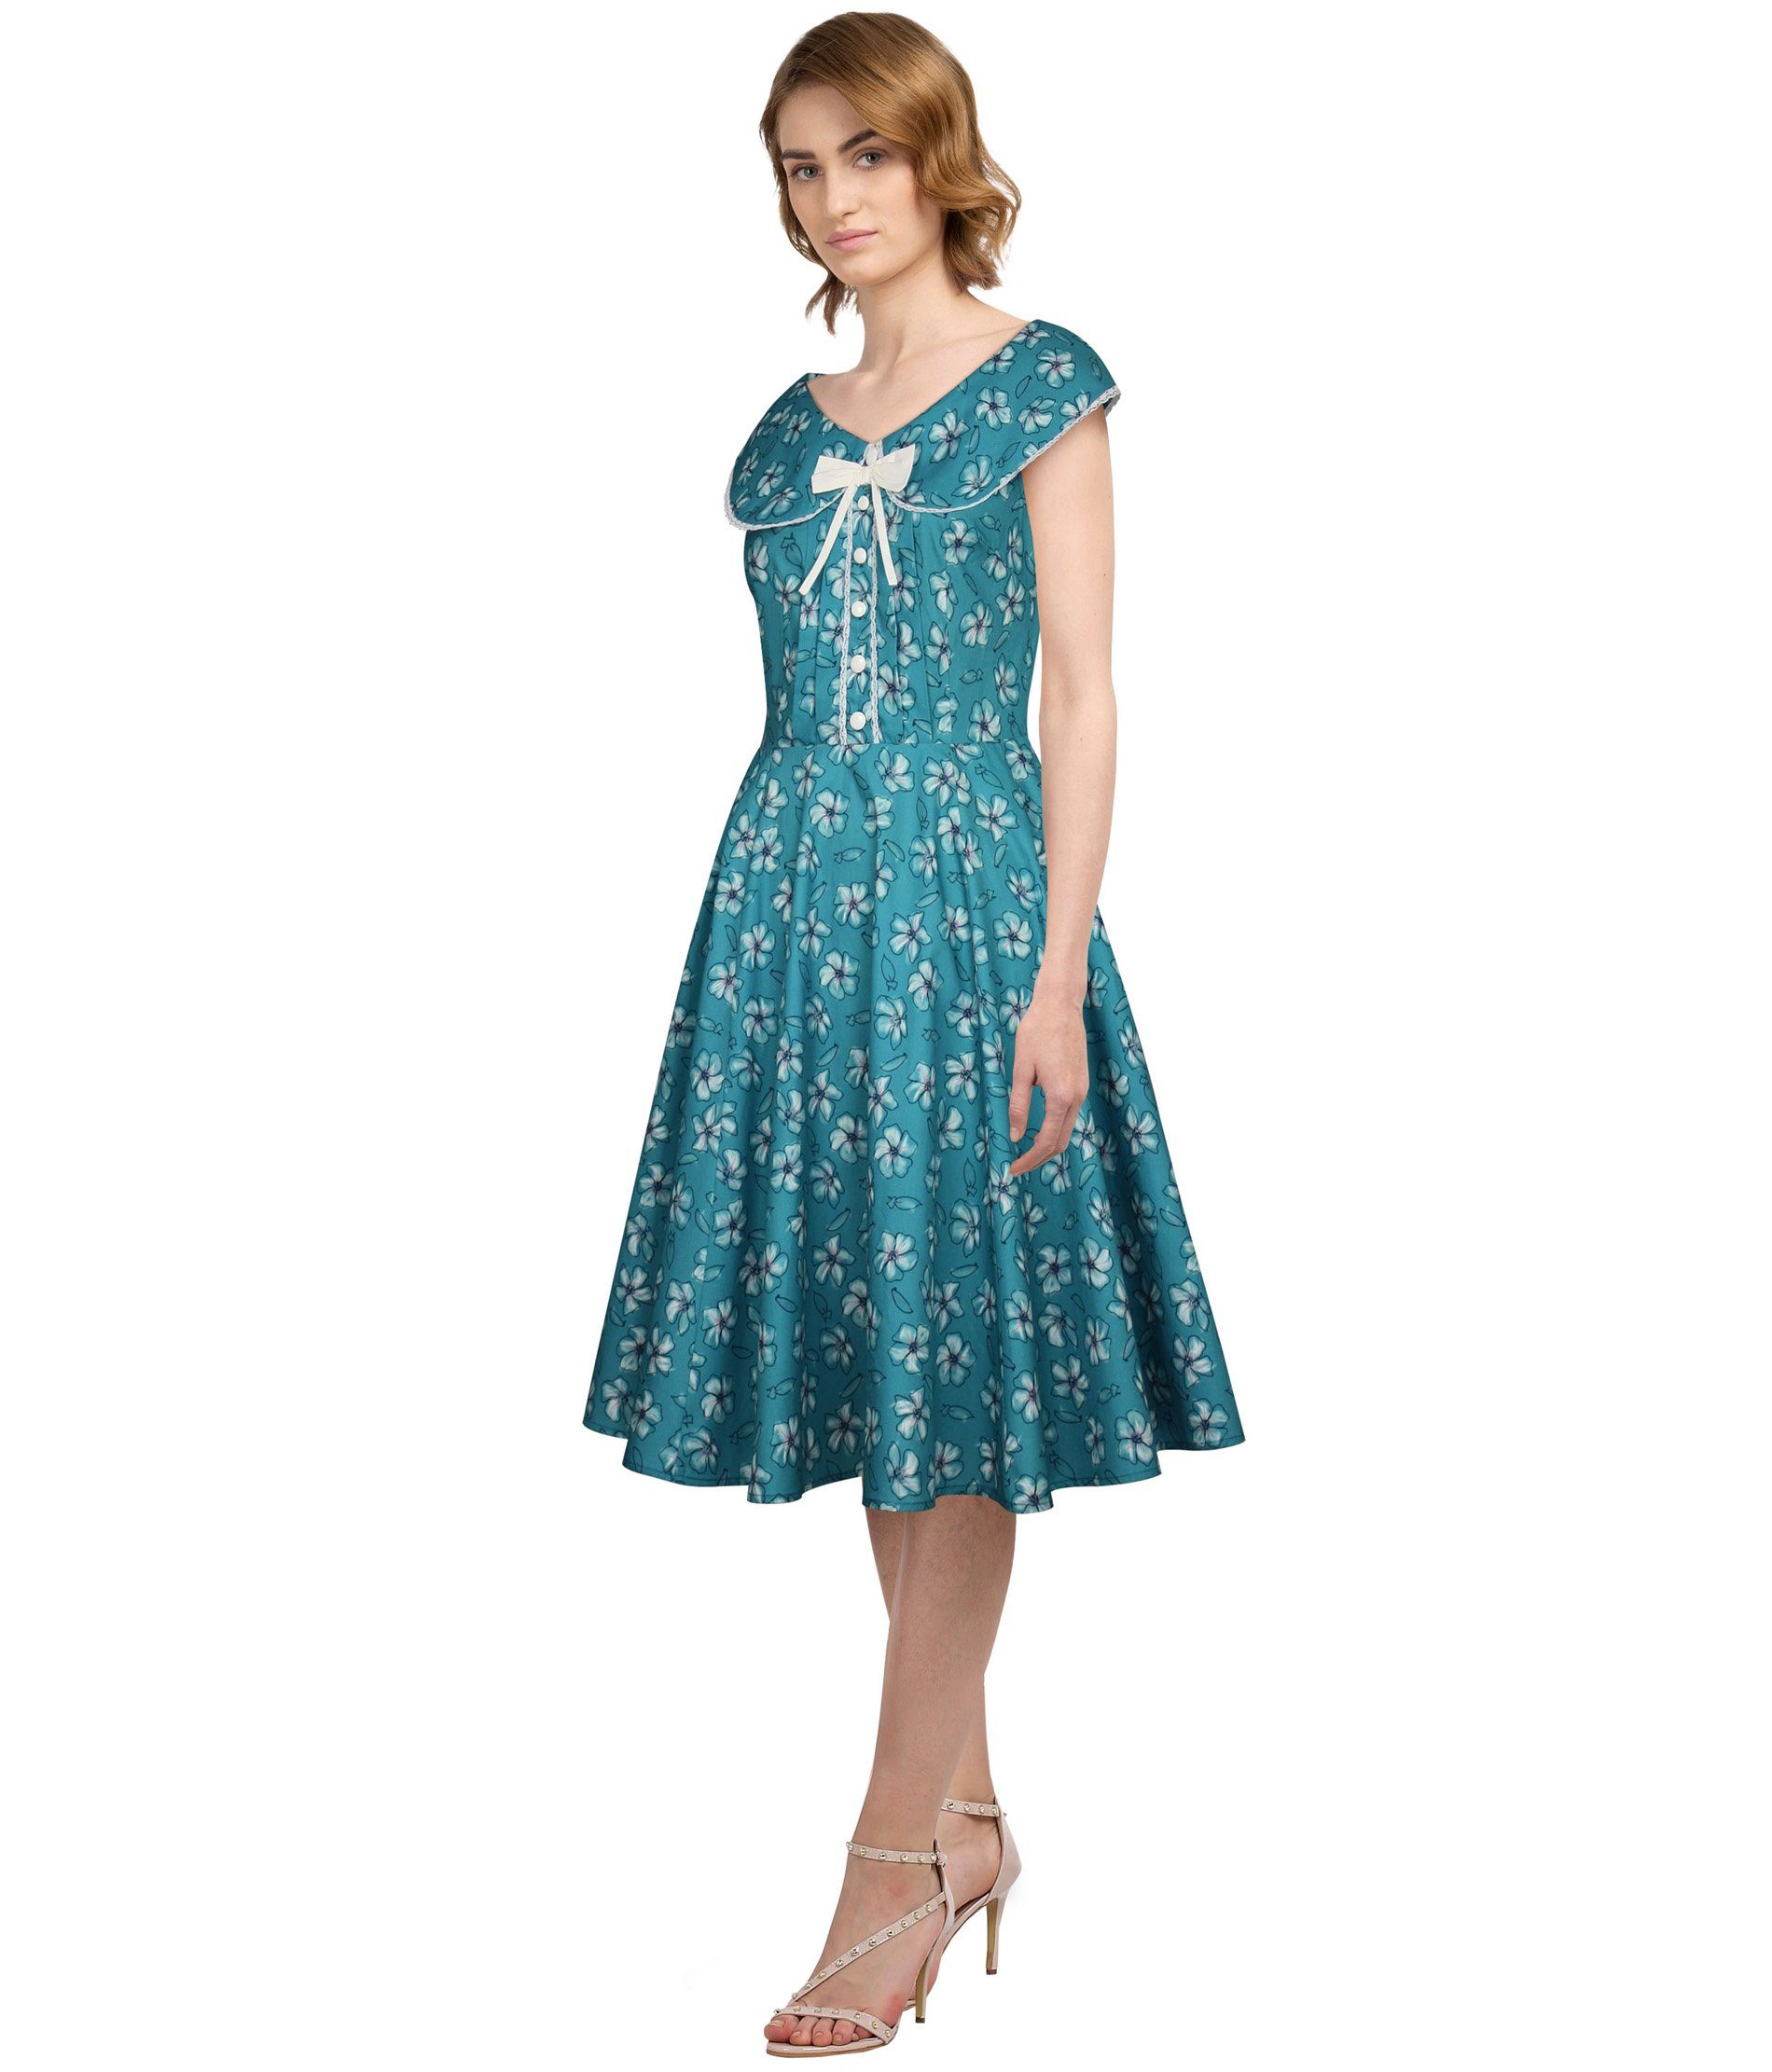 Chic Star Petticoat-Kleid Vintage Kleid zum Petticoat in türkis Blumemuster